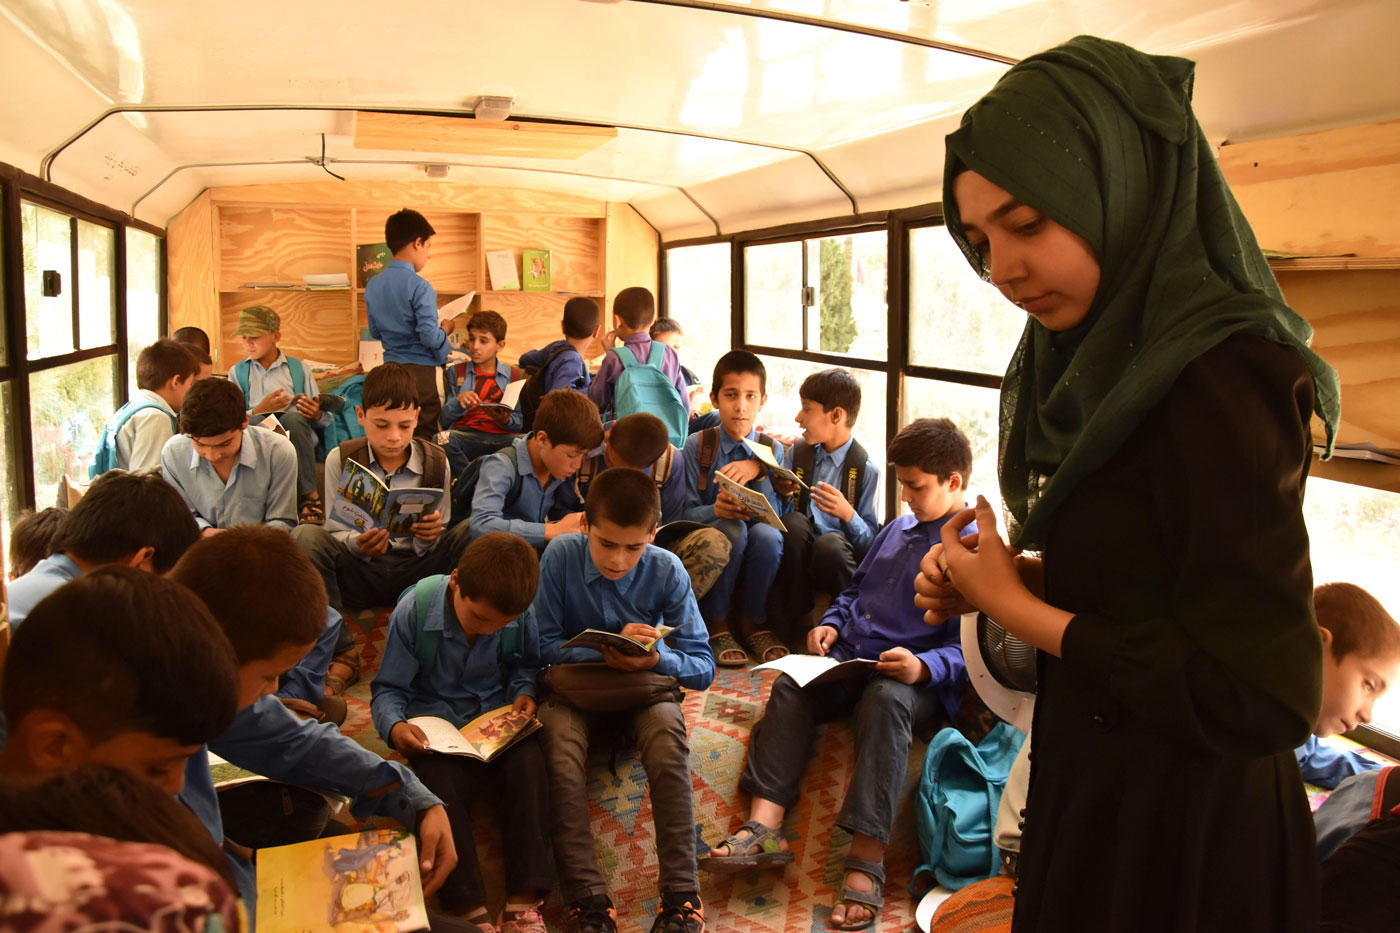 Una educadora comprueba qué libros están leyendo los niños en uno de los autobuses de la asociación Charmaghz, este domingo en Kabul.